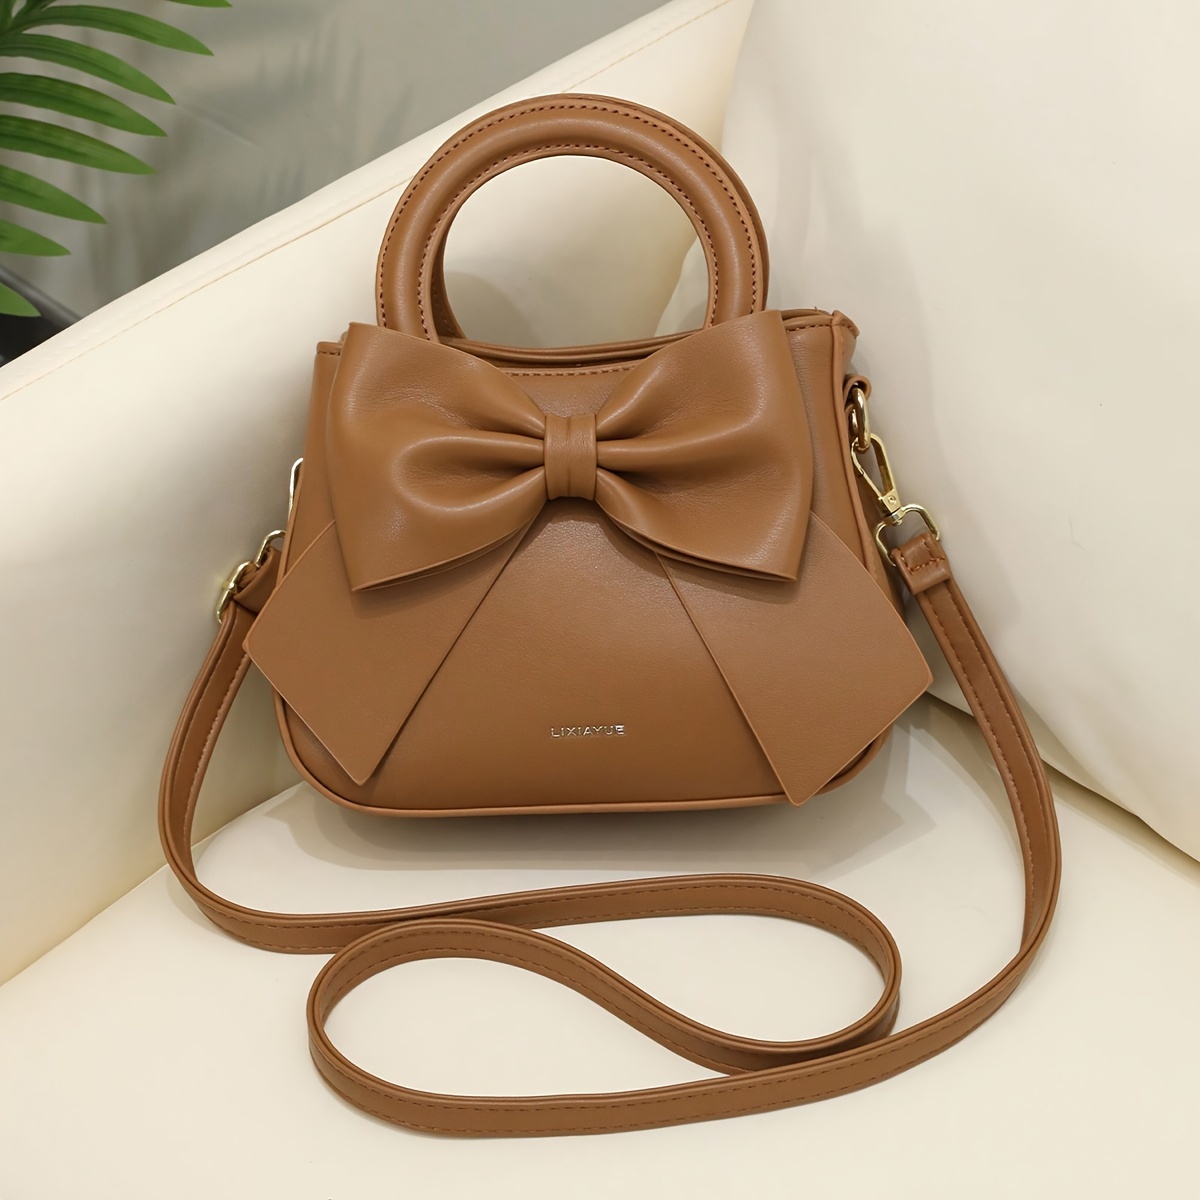 Ladies Cute Small Handbag Cross Shoulder Bag for Women, Brown